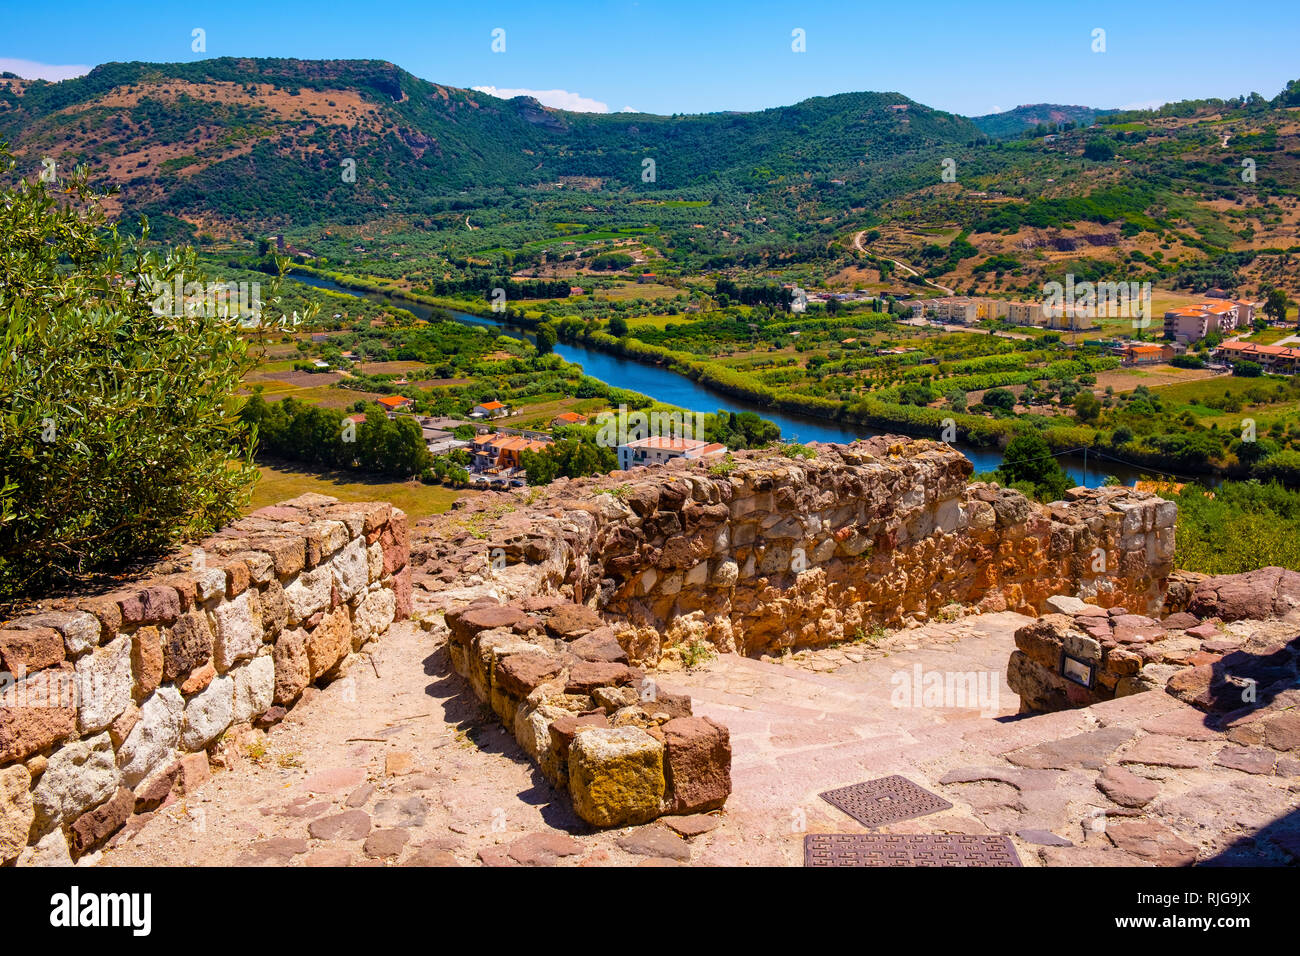 Bosa, Sardinien/Italien - 2018/08/13: Panoramablick auf die Altstadt von Bosa durch den Fluss Temo und die umliegenden Hügel von Malaspina Castle Hill gesehen - Weiß Stockfoto